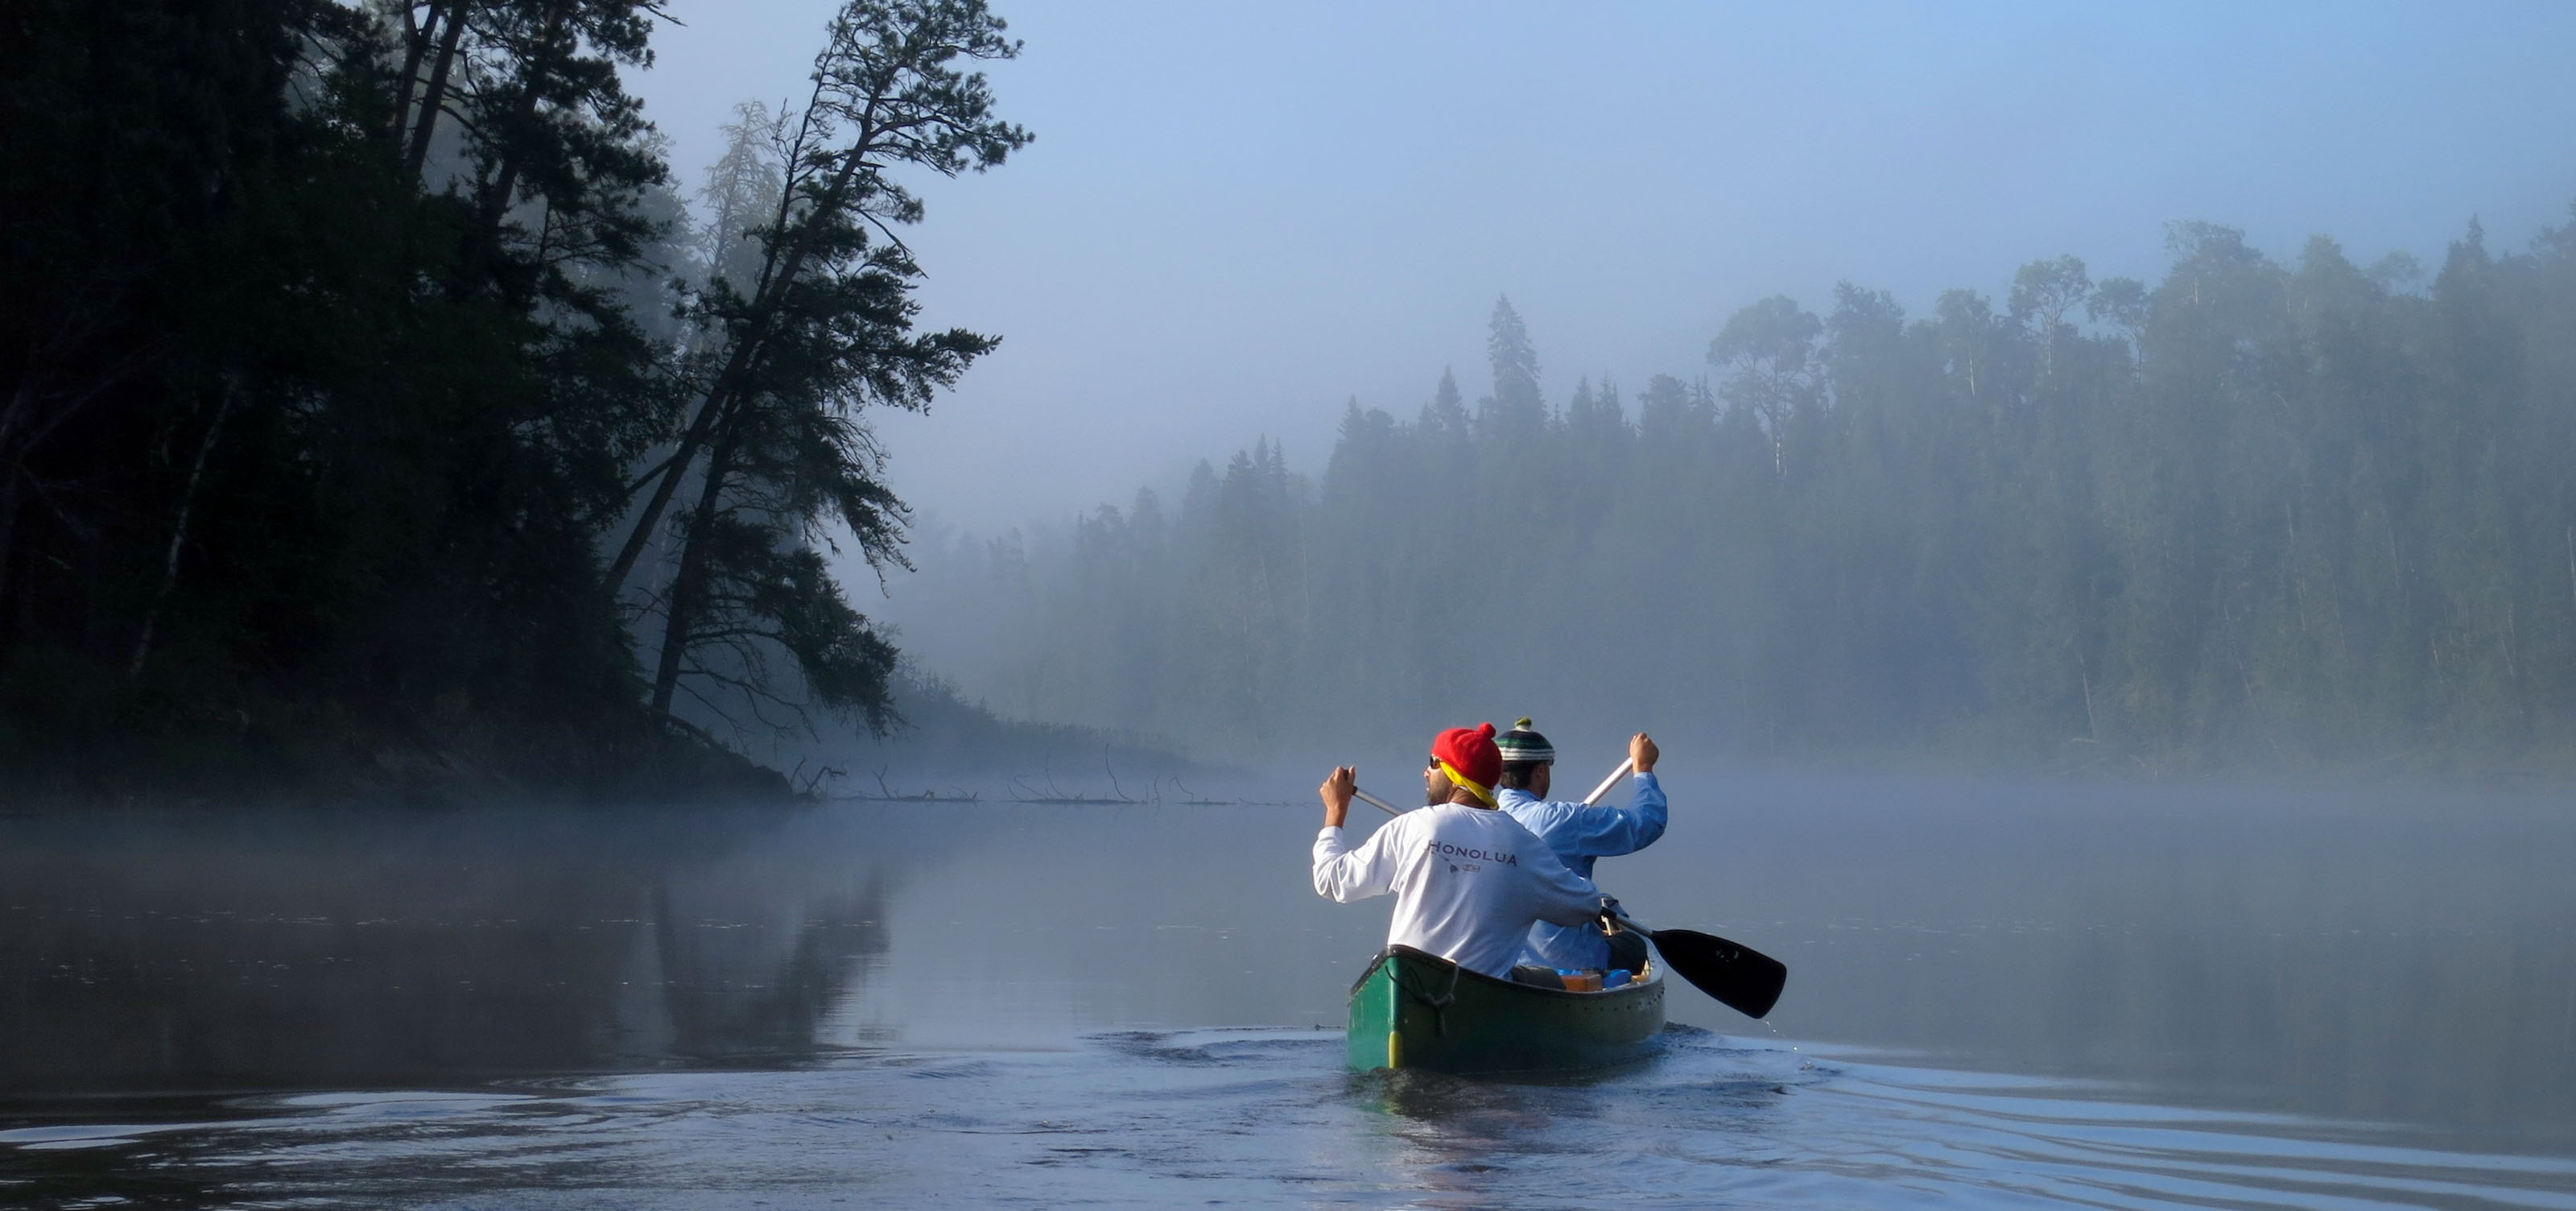 canoe on a misty river.